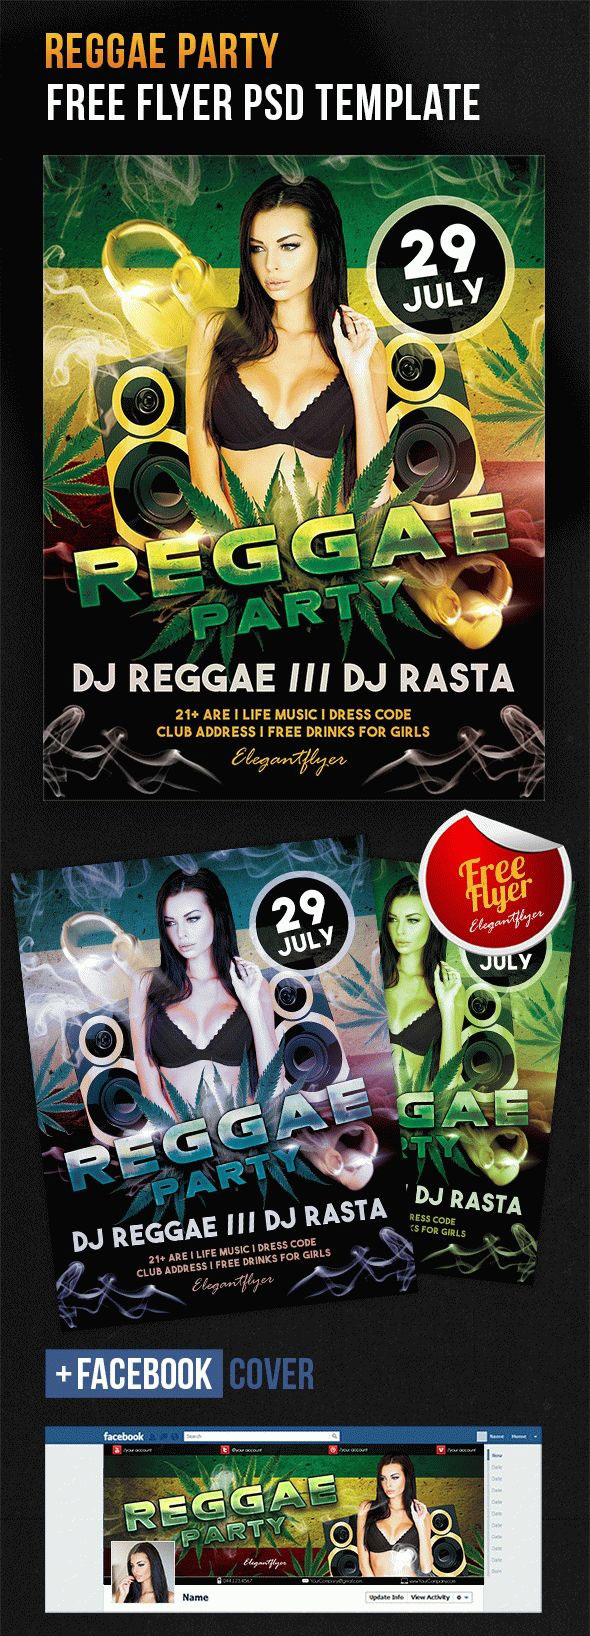 Modèle Hip Hop Smoky Reggae Party Flyer avec une couverture Facebook